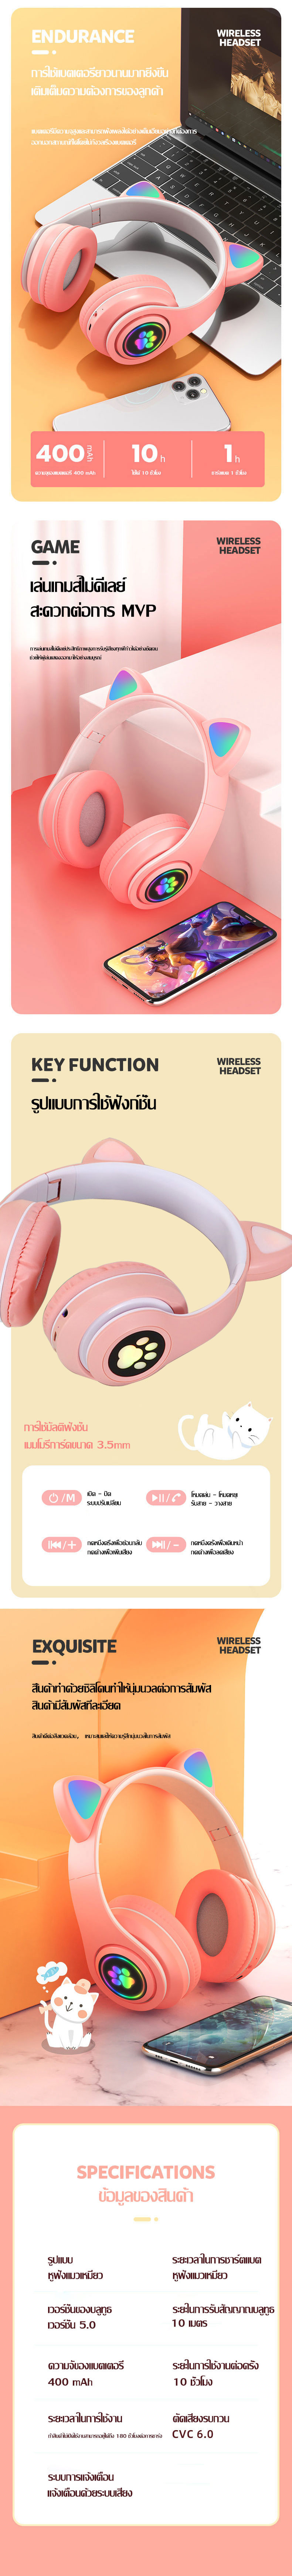 เกี่ยวกับสินค้า หูฟังแบบครอบหัว หูฟังแมว หูฟังบลูทูธ 5.0 หูแมว พร้อมไมค์ มีไฟLED ระบบเสียงสเตอริโอ ลดเสียงรบกวน ใช้ได้ทั้งคอมและมือถือ สีเหลือง/สีดำ/สีชมพู/สีเขียว/สีฟ้า